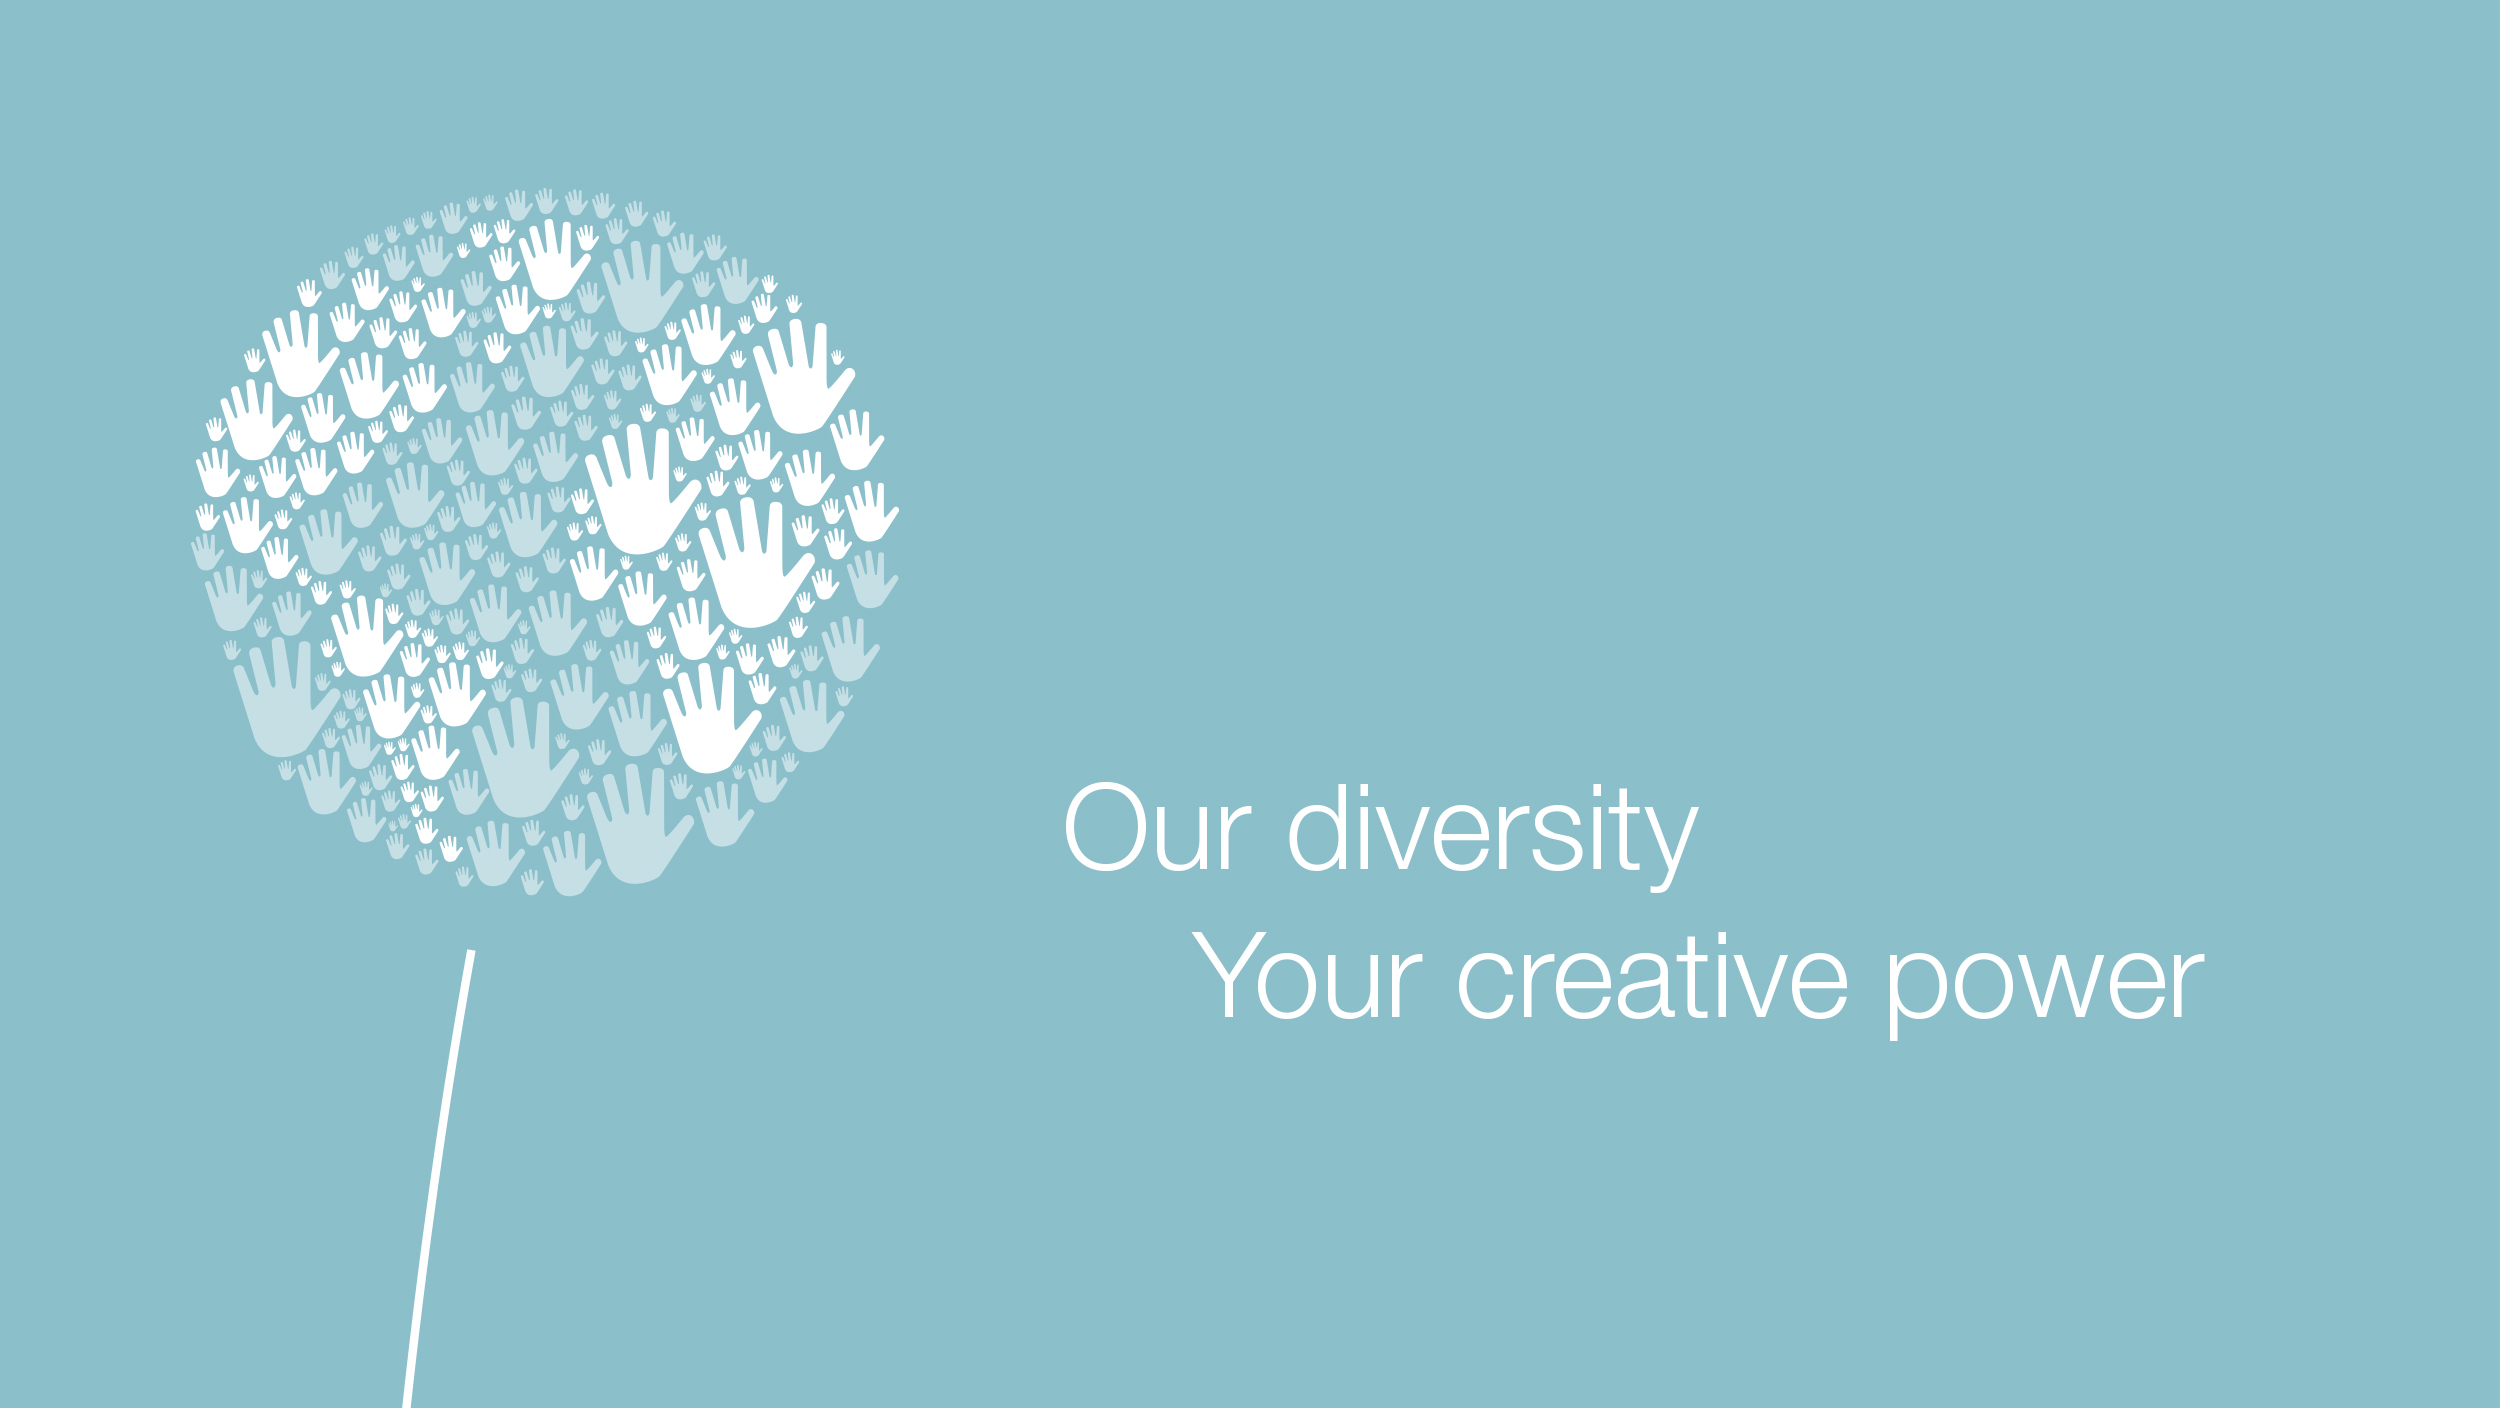 Svět Vám leží u nohou, jak říká přísloví: Naše rozmanitost / Vaše kreativní schopnosti